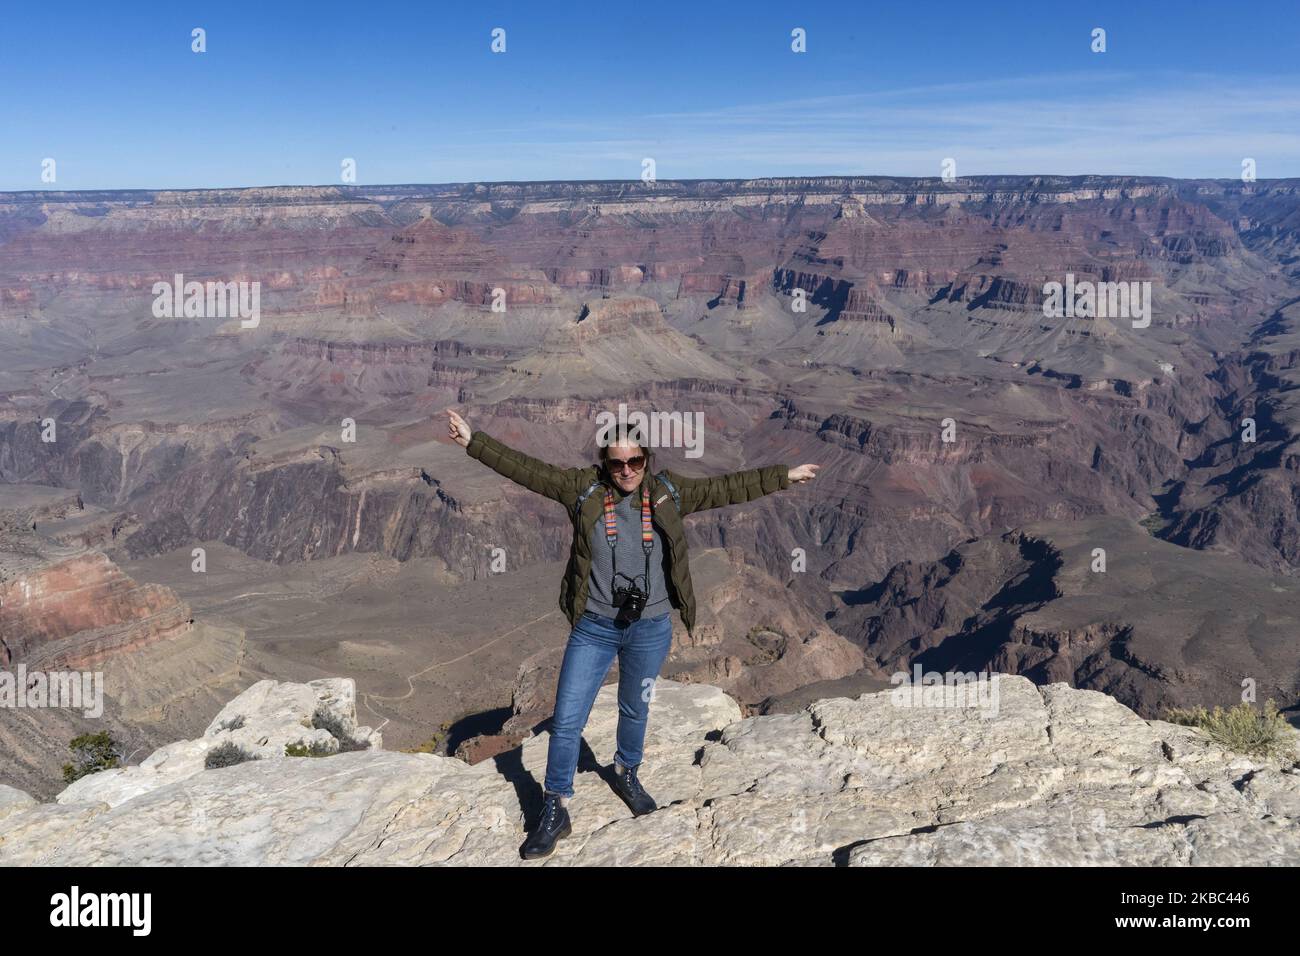 Eine junge Frau wird mit der Landschaft des Grand Canyon of the Colorado (U.S.A) im Hintergrund fotografiert Reisen entlang der historischen Route 66 in Arizona wird zu einer Suche nach „typischen“ Ecken, die an die Atmosphäre erinnern, die sie in den Jahren 50s und 60s des letzten Jahrhunderts hatte, Als es die am häufigsten von Urlaubern genutzte Route war, als die Vereinigten Staaten die Küste Kaliforniens erreichen wollten, wurde diese Route heute nach der Schaffung der Interstate 40 in den Hintergrund gedrängt. Aber wenn Sie von Las Vegas zum Grand Canyon des Colorado fahren, an seinem südlichen Rand, ist es viel mehr Stockfoto